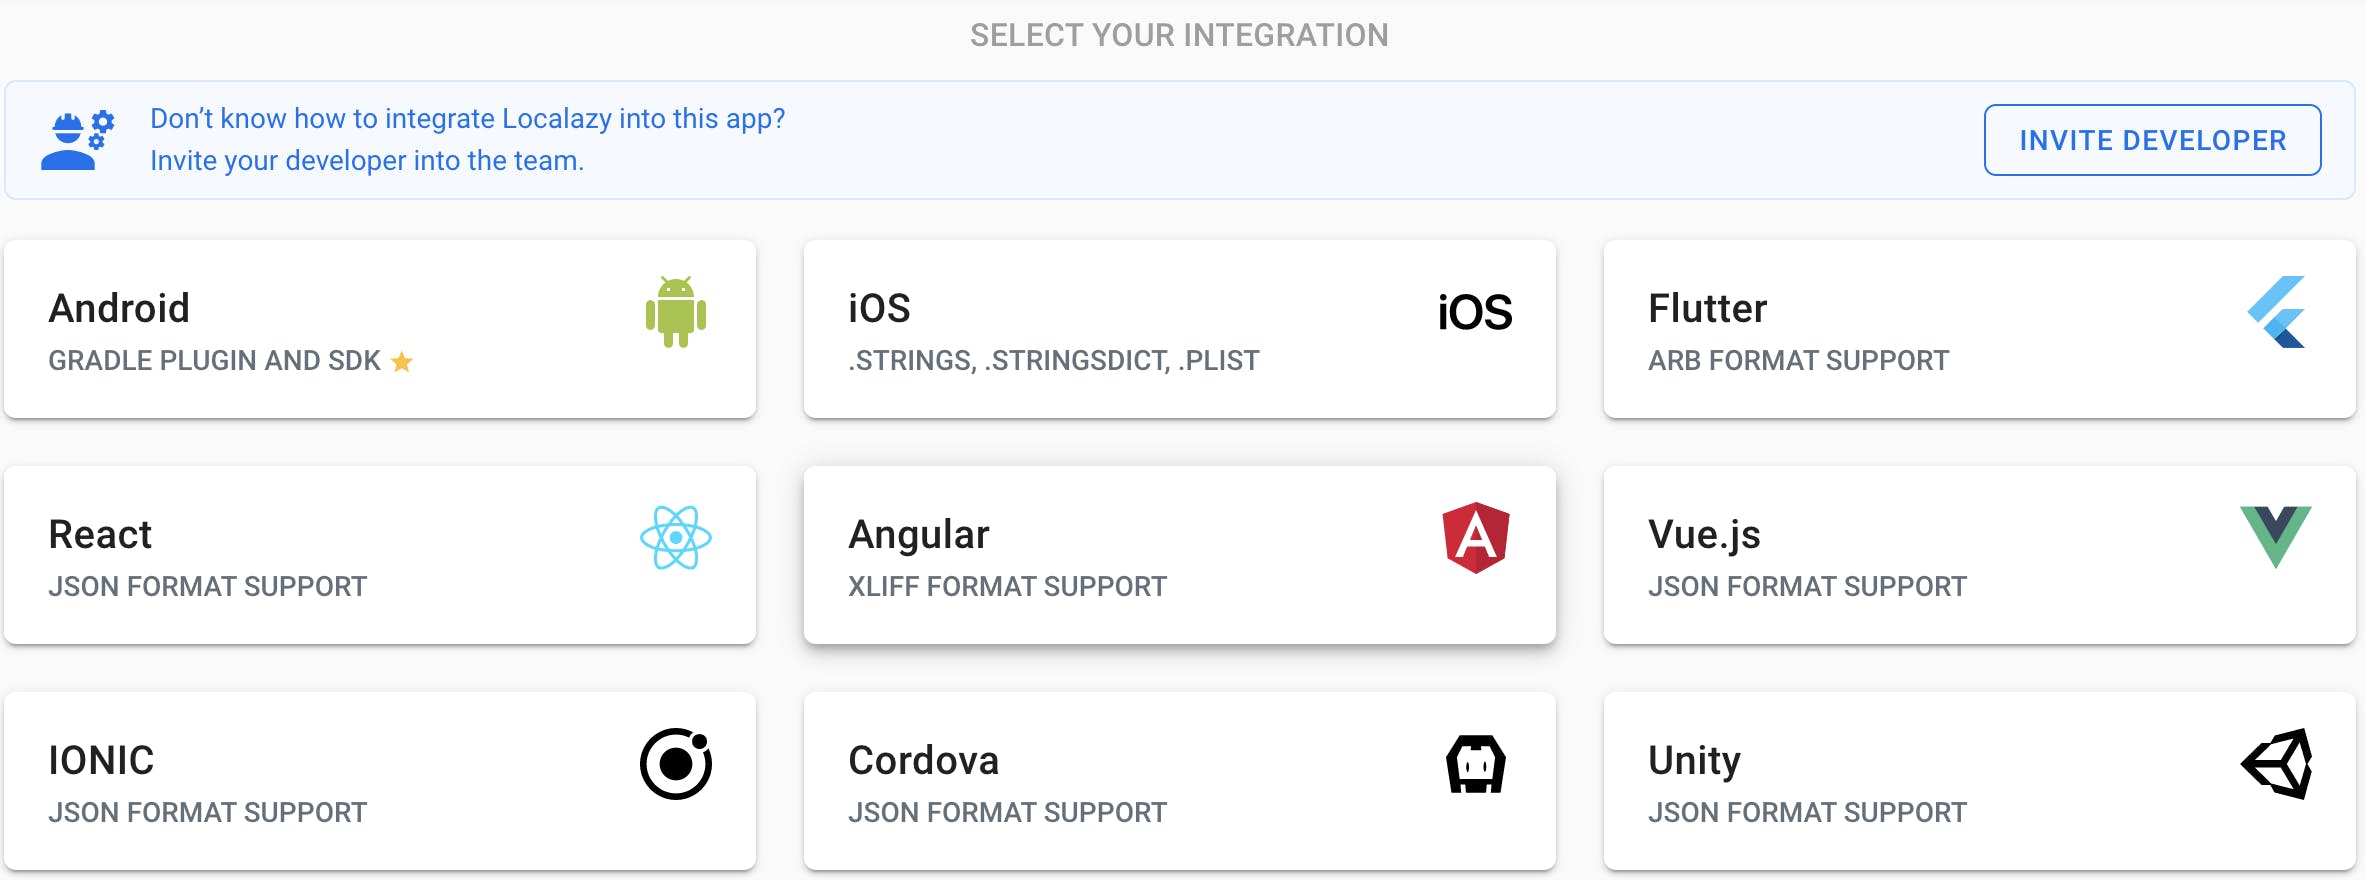 Select Angular integration